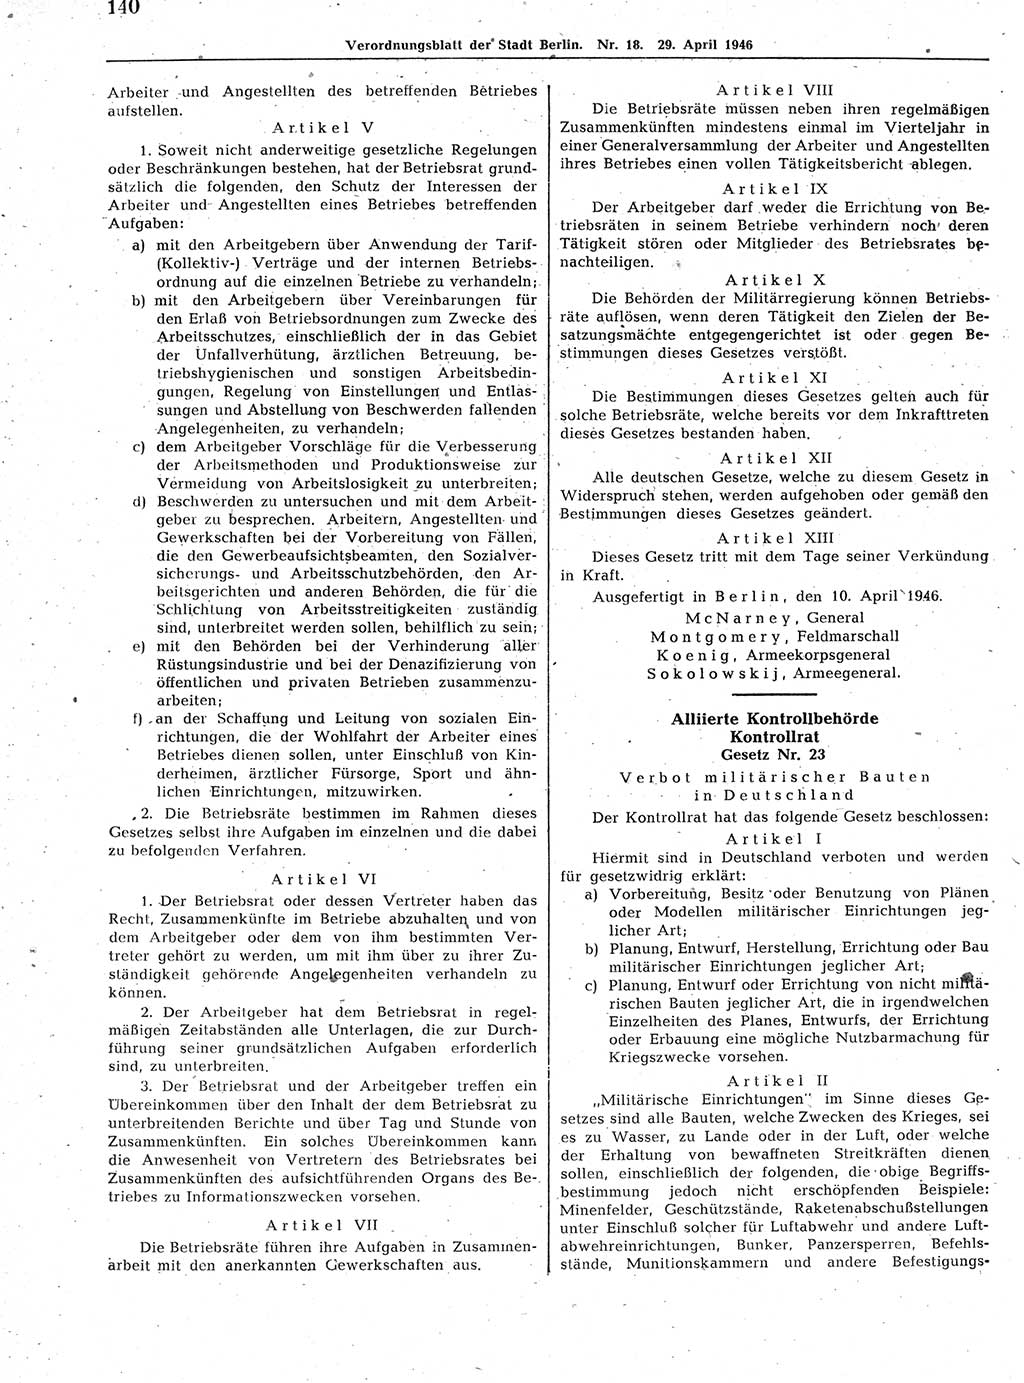 Verordnungsblatt (VOBl.) der Stadt Berlin, für Groß-Berlin 1946, Seite 140 (VOBl. Bln. 1946, S. 140)